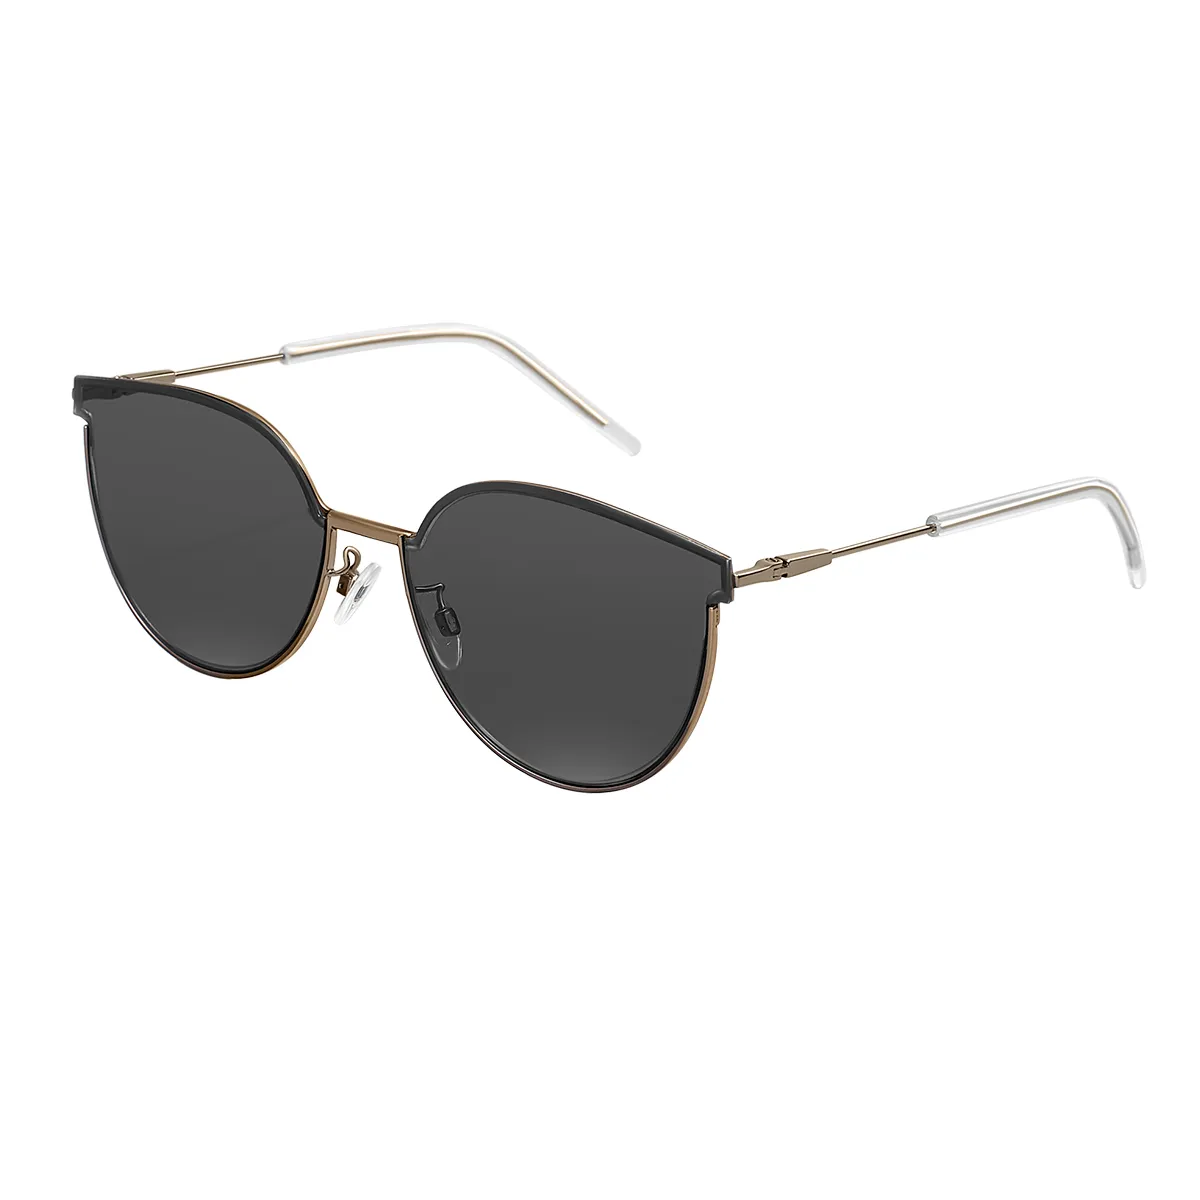 Elise - Cat-eye Silver Sunglasses for Women